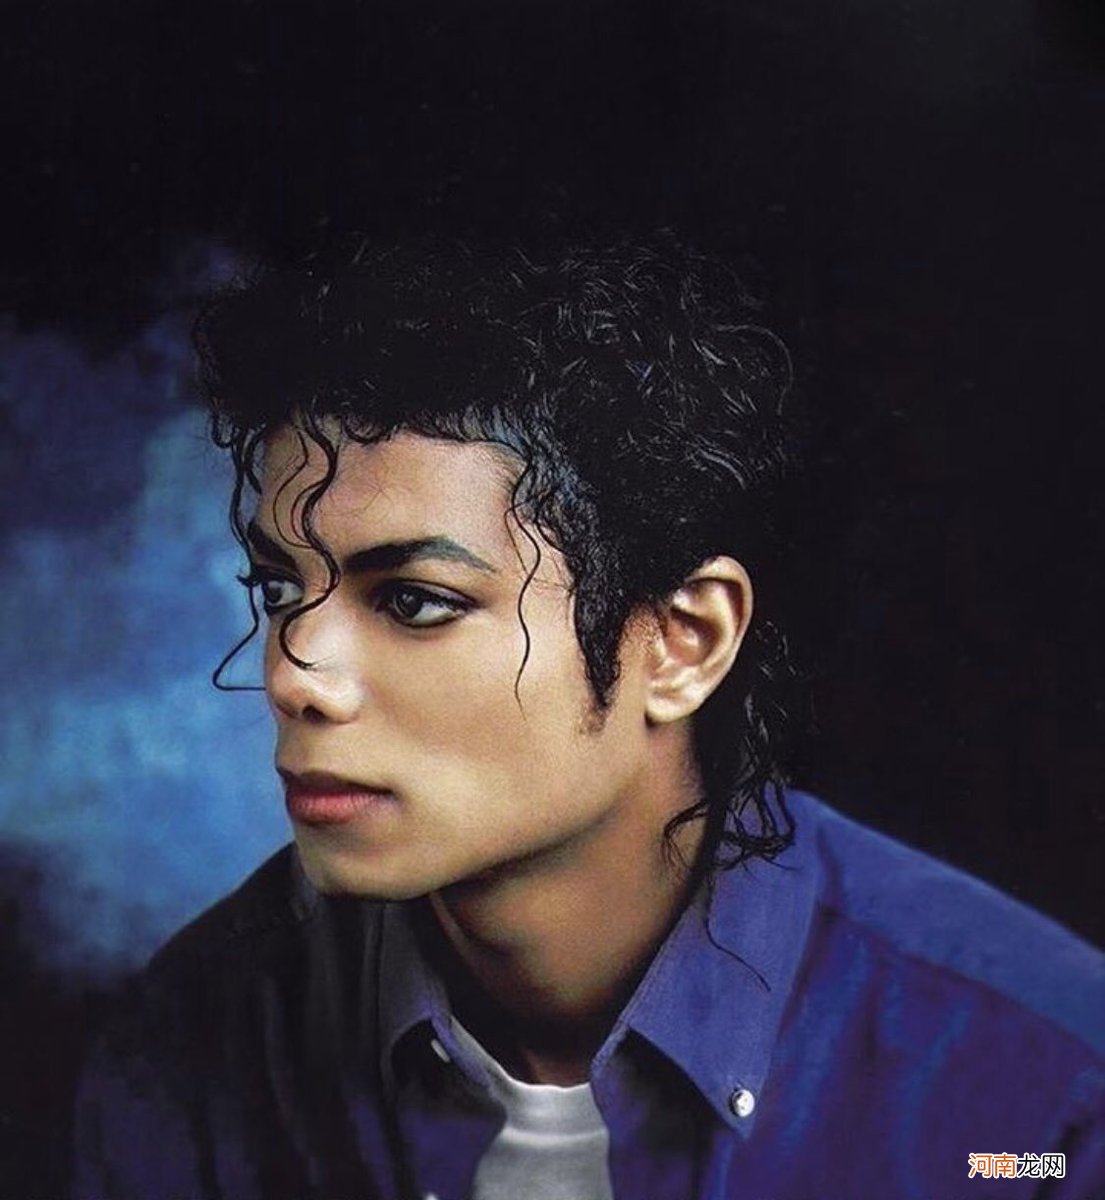 迈克杰克逊什么时候死的 迈克尔杰克逊演唱会共死了多少人